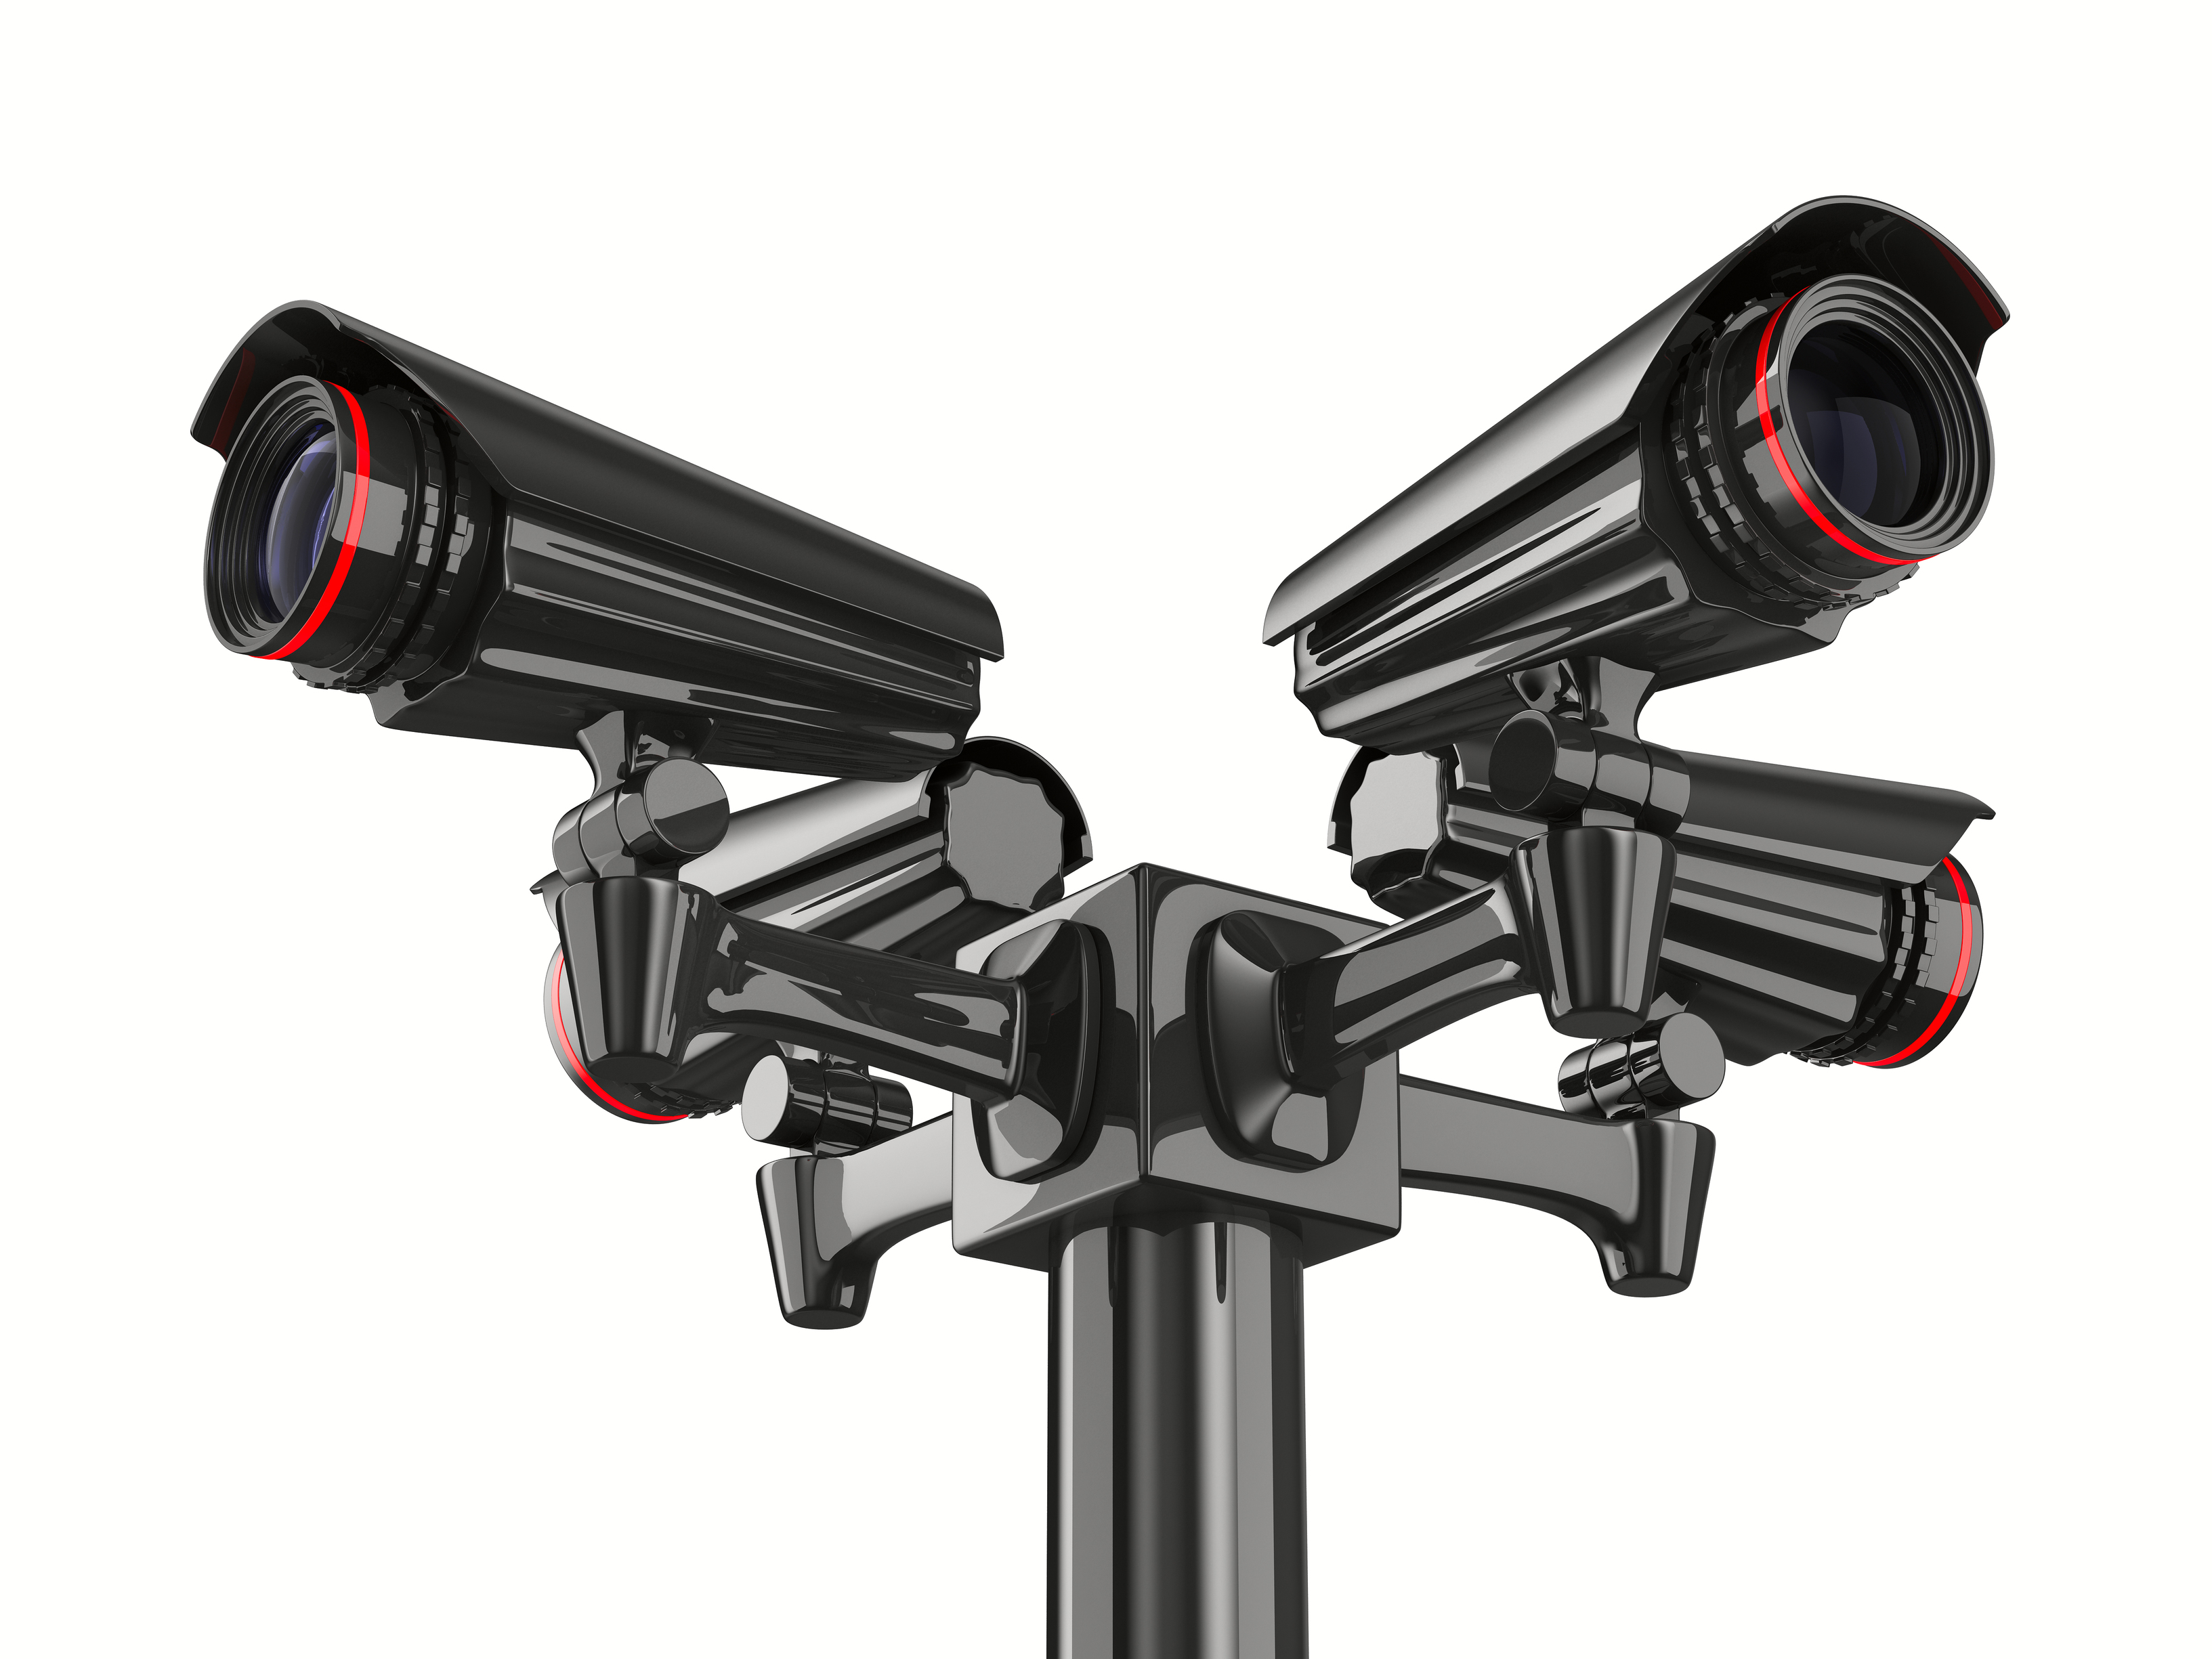 Digital Video Surveillance